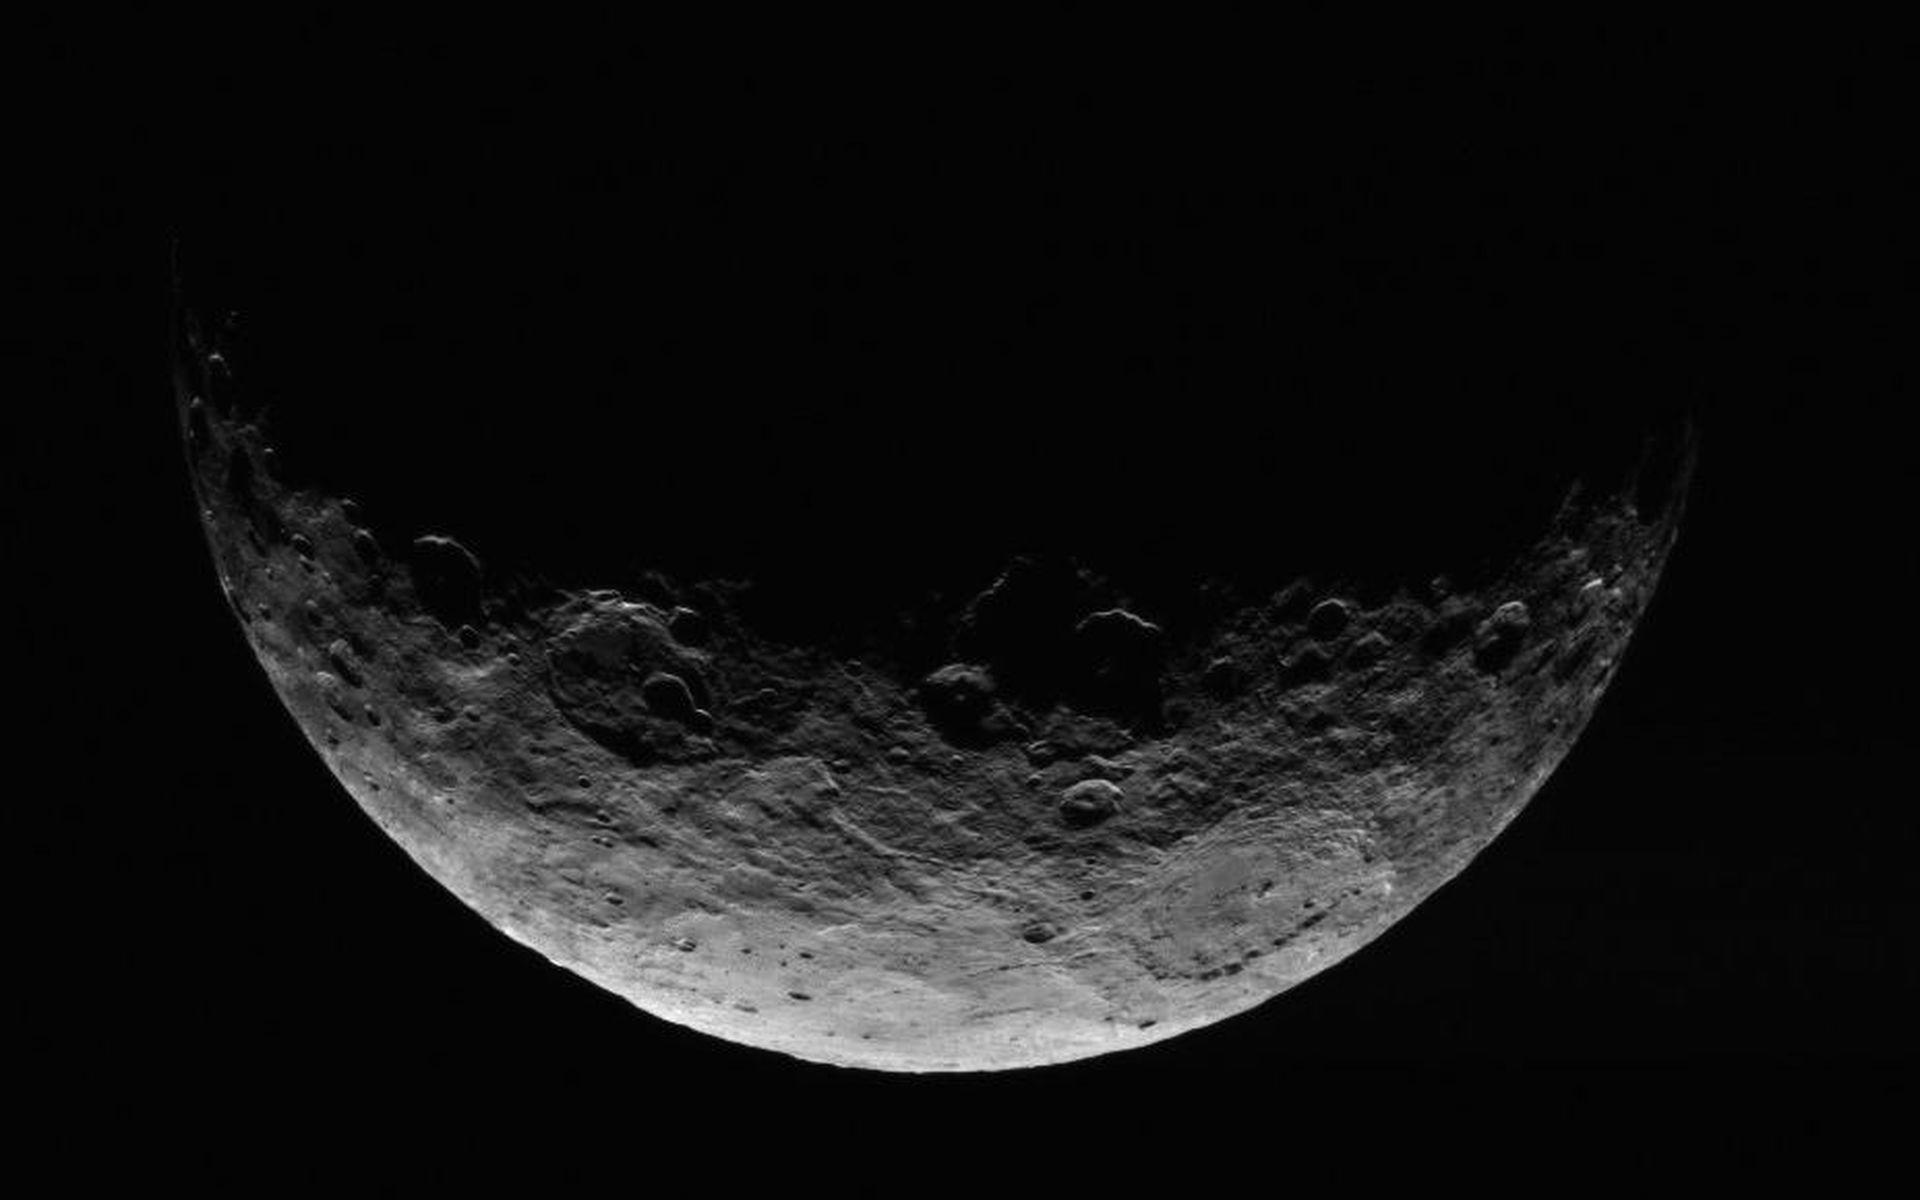 NASA Moon Wallpapers - Top Free NASA Moon Backgrounds ...